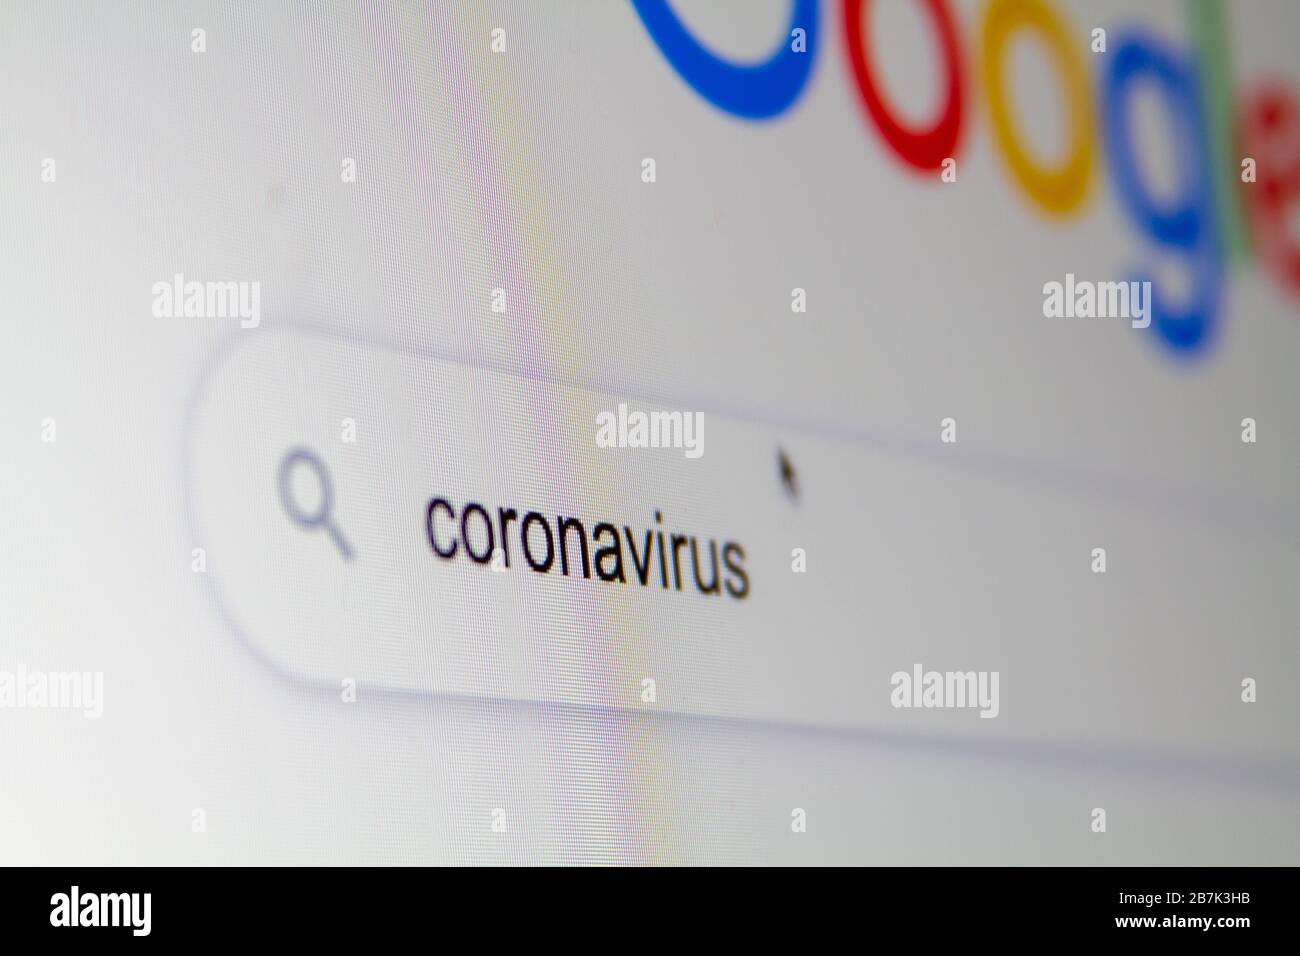 Cerca 'coronavirus' in un motore di ricerca su internet su un computer. Foto Stock